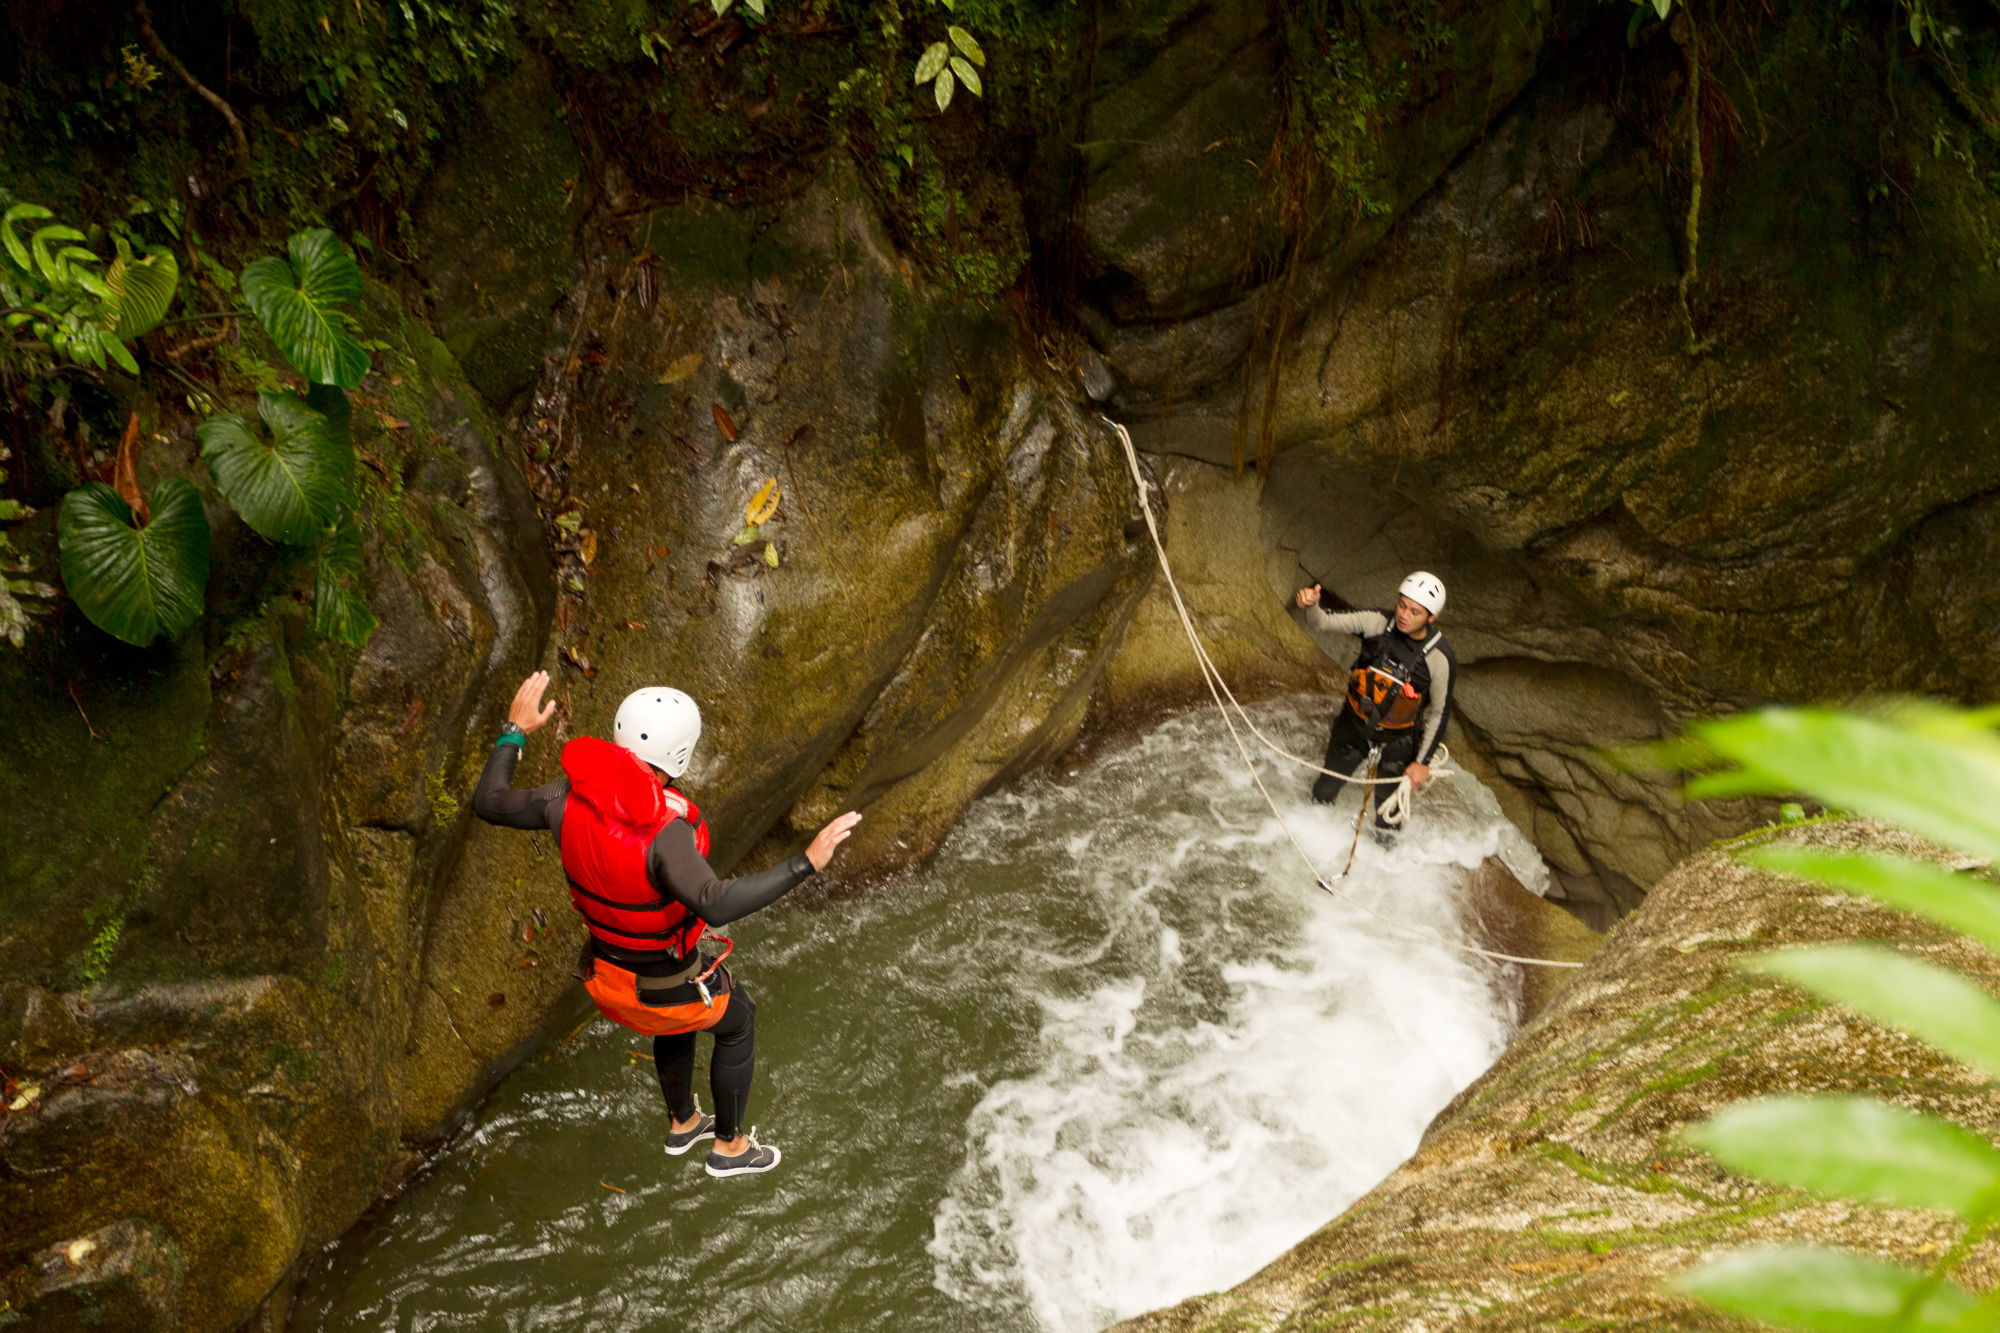 Zelo adrenalinski in pa zabaven šport za poskusiti je kanjoning